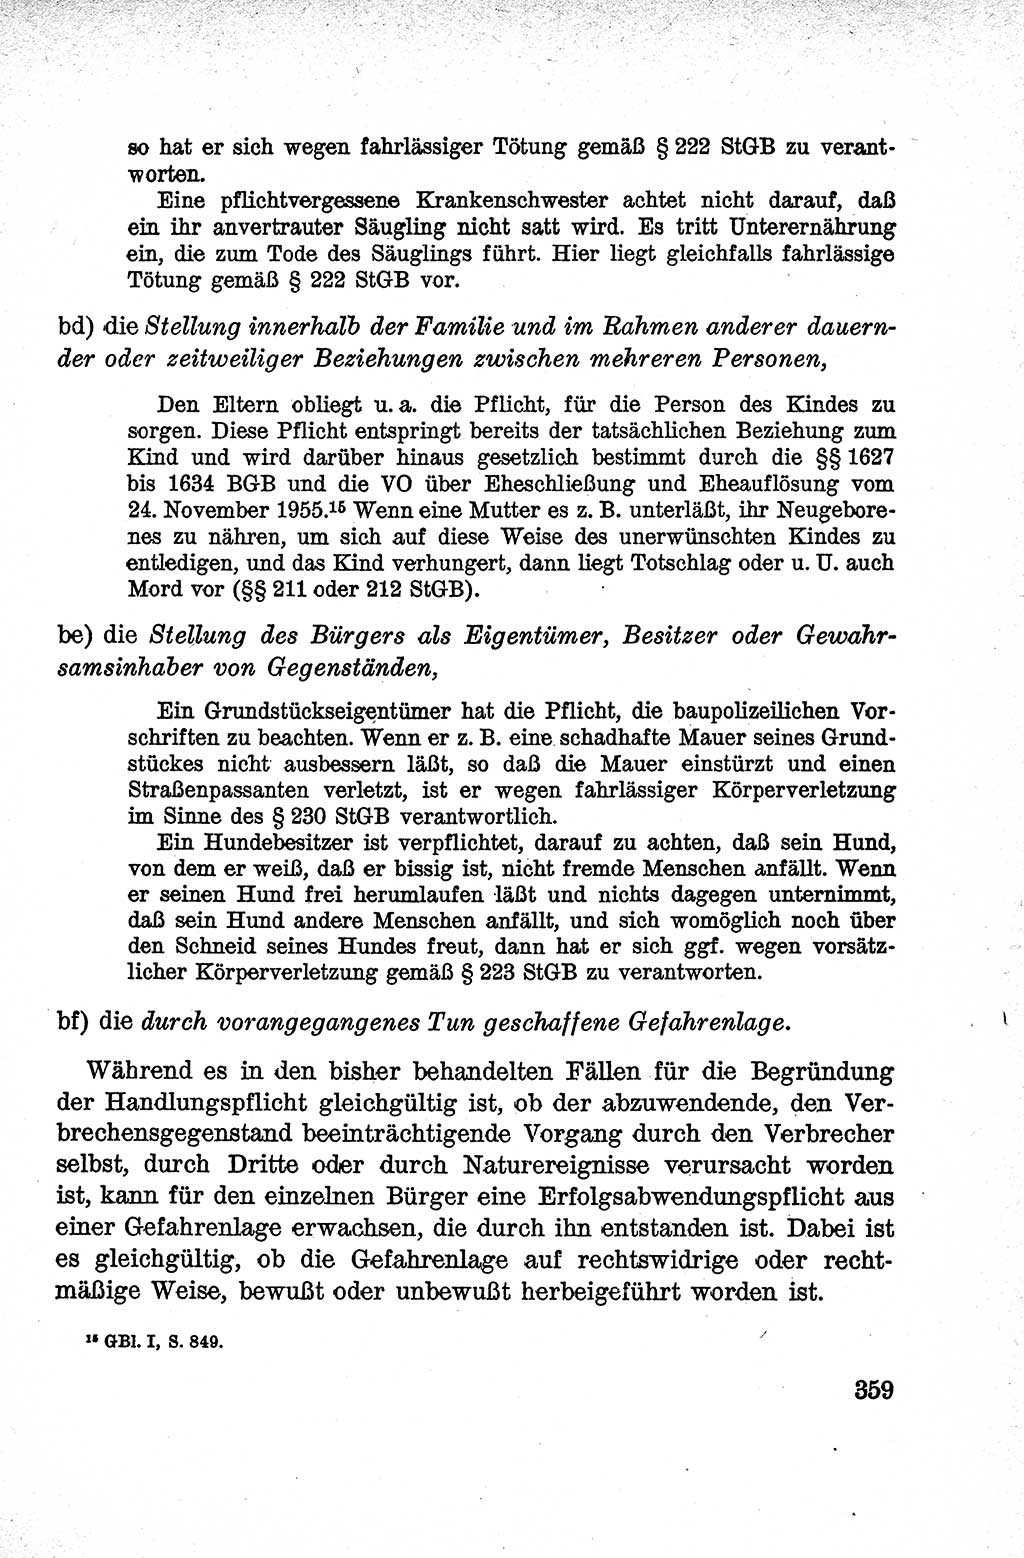 Lehrbuch des Strafrechts der Deutschen Demokratischen Republik (DDR), Allgemeiner Teil 1959, Seite 359 (Lb. Strafr. DDR AT 1959, S. 359)